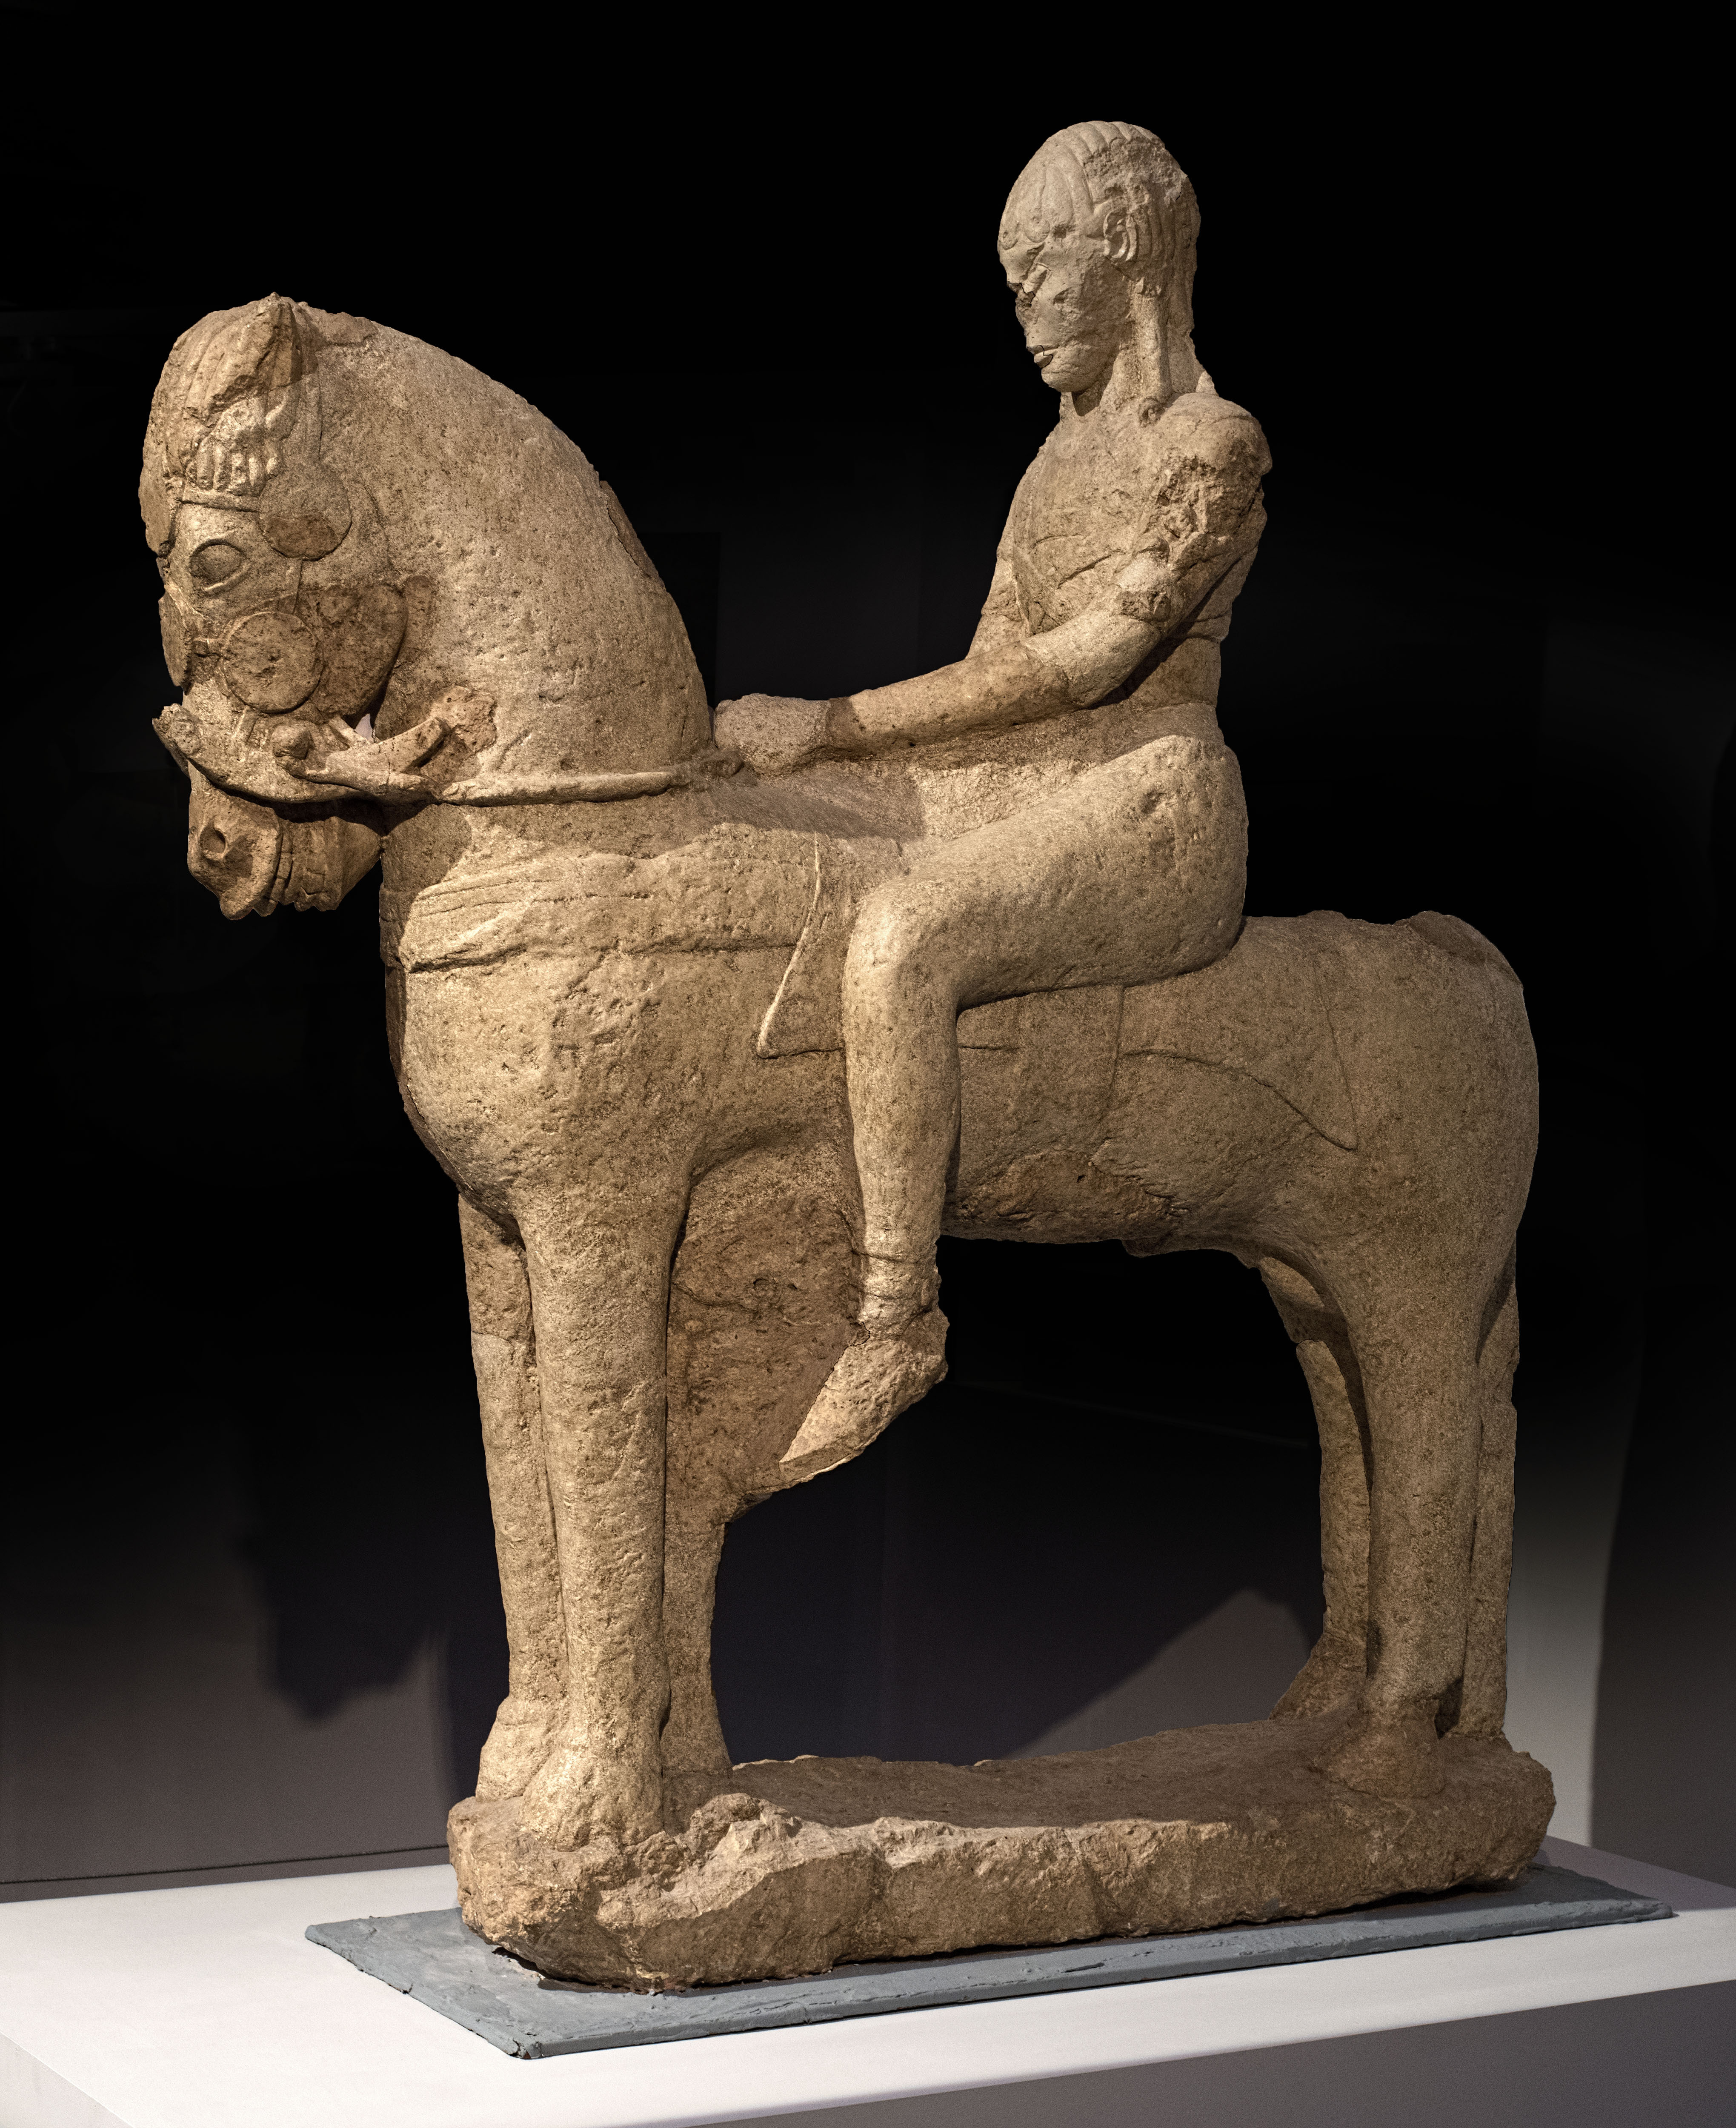 Esta estatua tallada en caliza procede de la tumba 18 de la necrópolis ibérica de Los Villares (Albacete) y está datada en el año 490 a.C. Se expone habitualmente en el Museo de Albacete